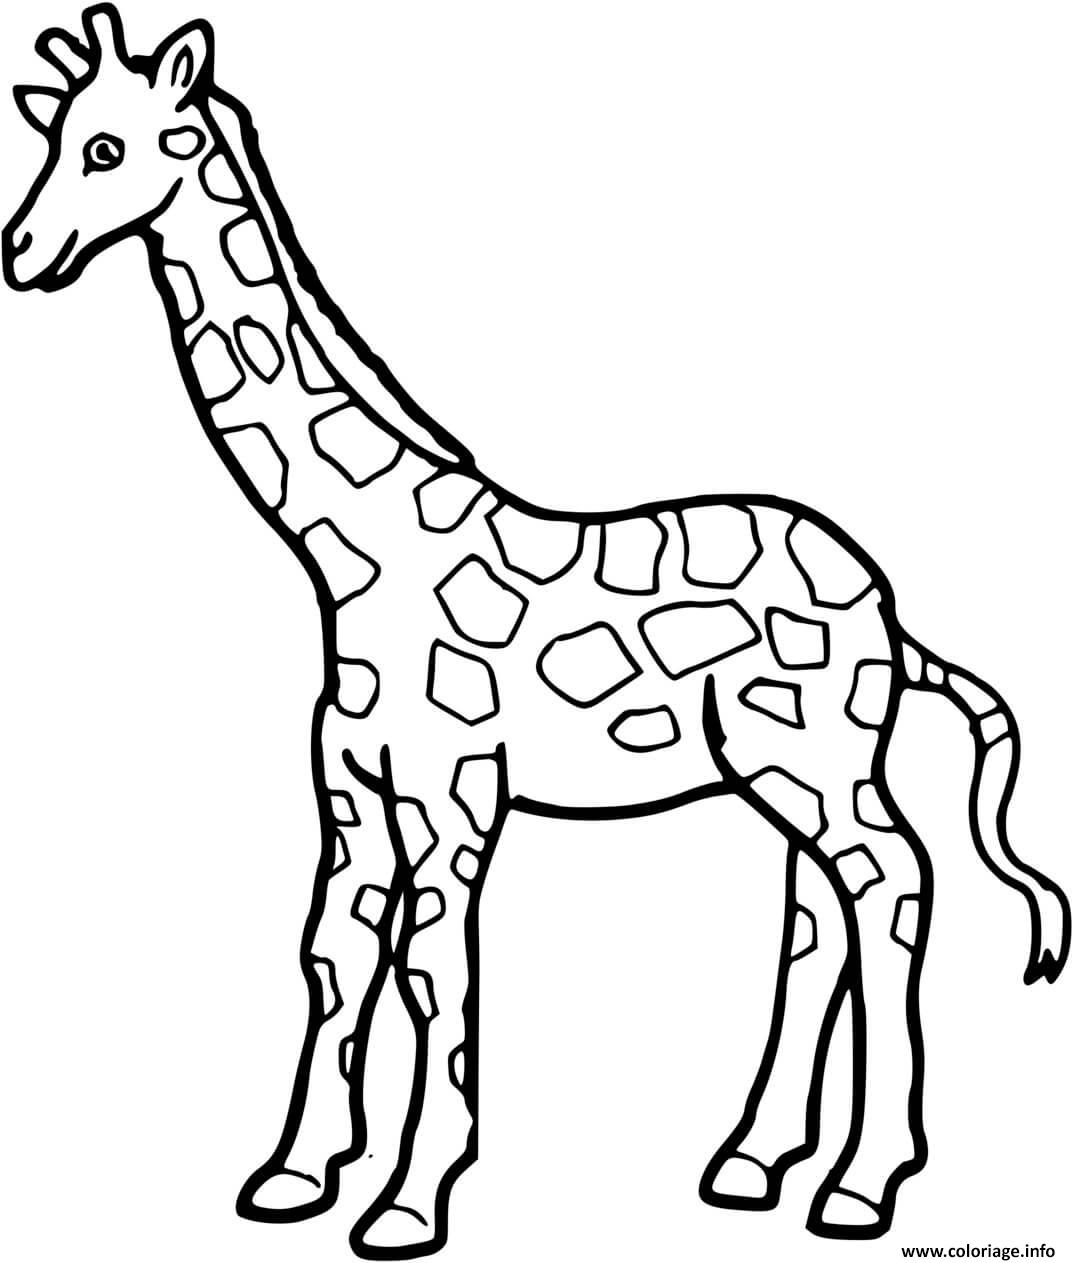 Dessin girafe a colorier Coloriage Gratuit à Imprimer